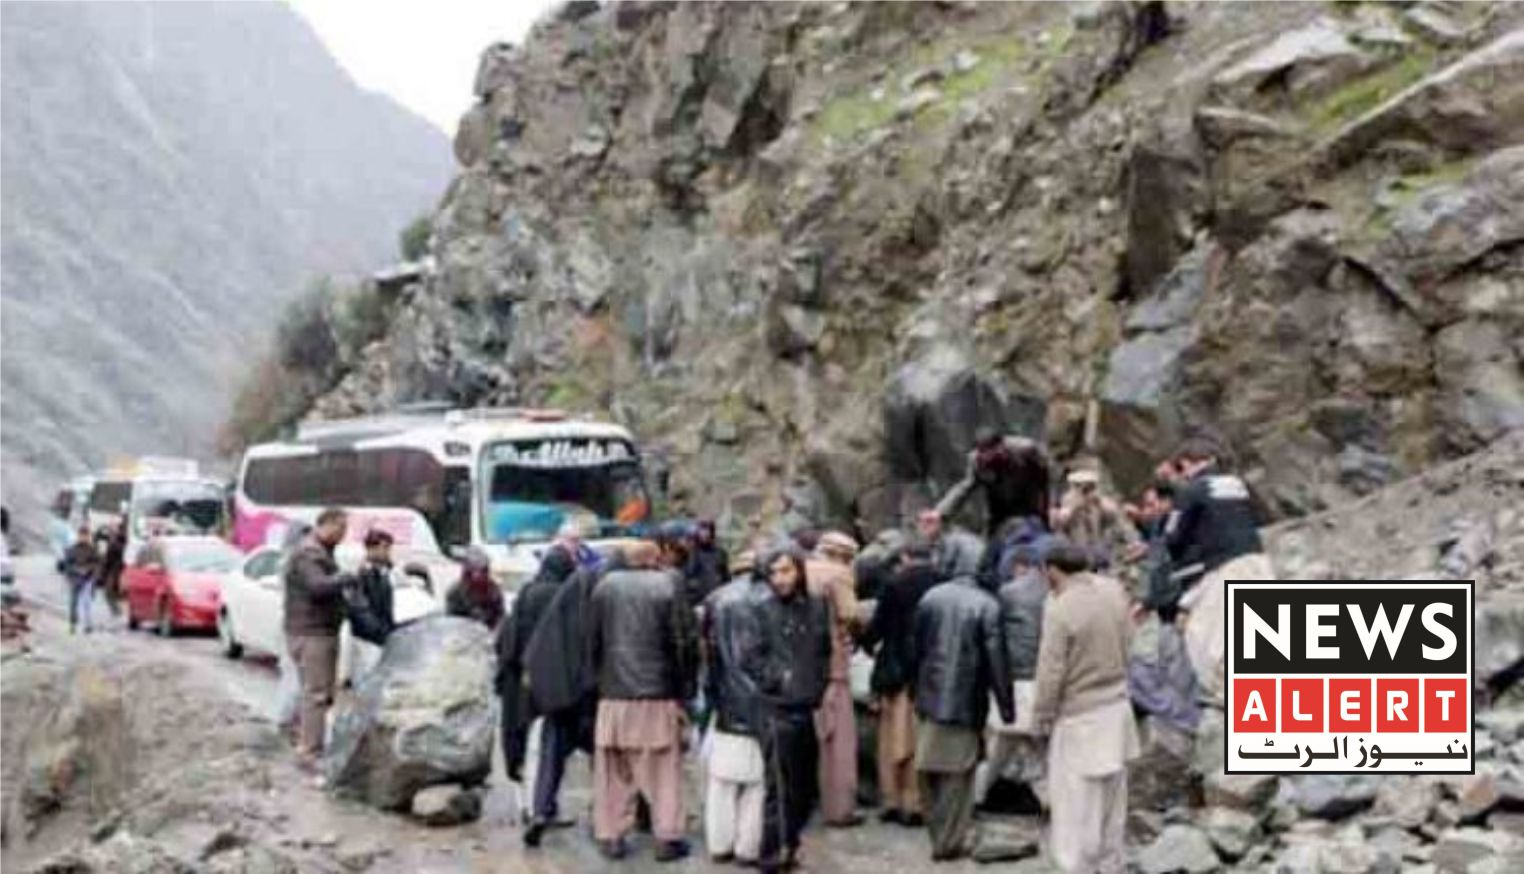 لینڈ سلائیڈنگ کے باعث گلگت اور راولپنڈی کے درمیان زمینی رابطہ منقطع